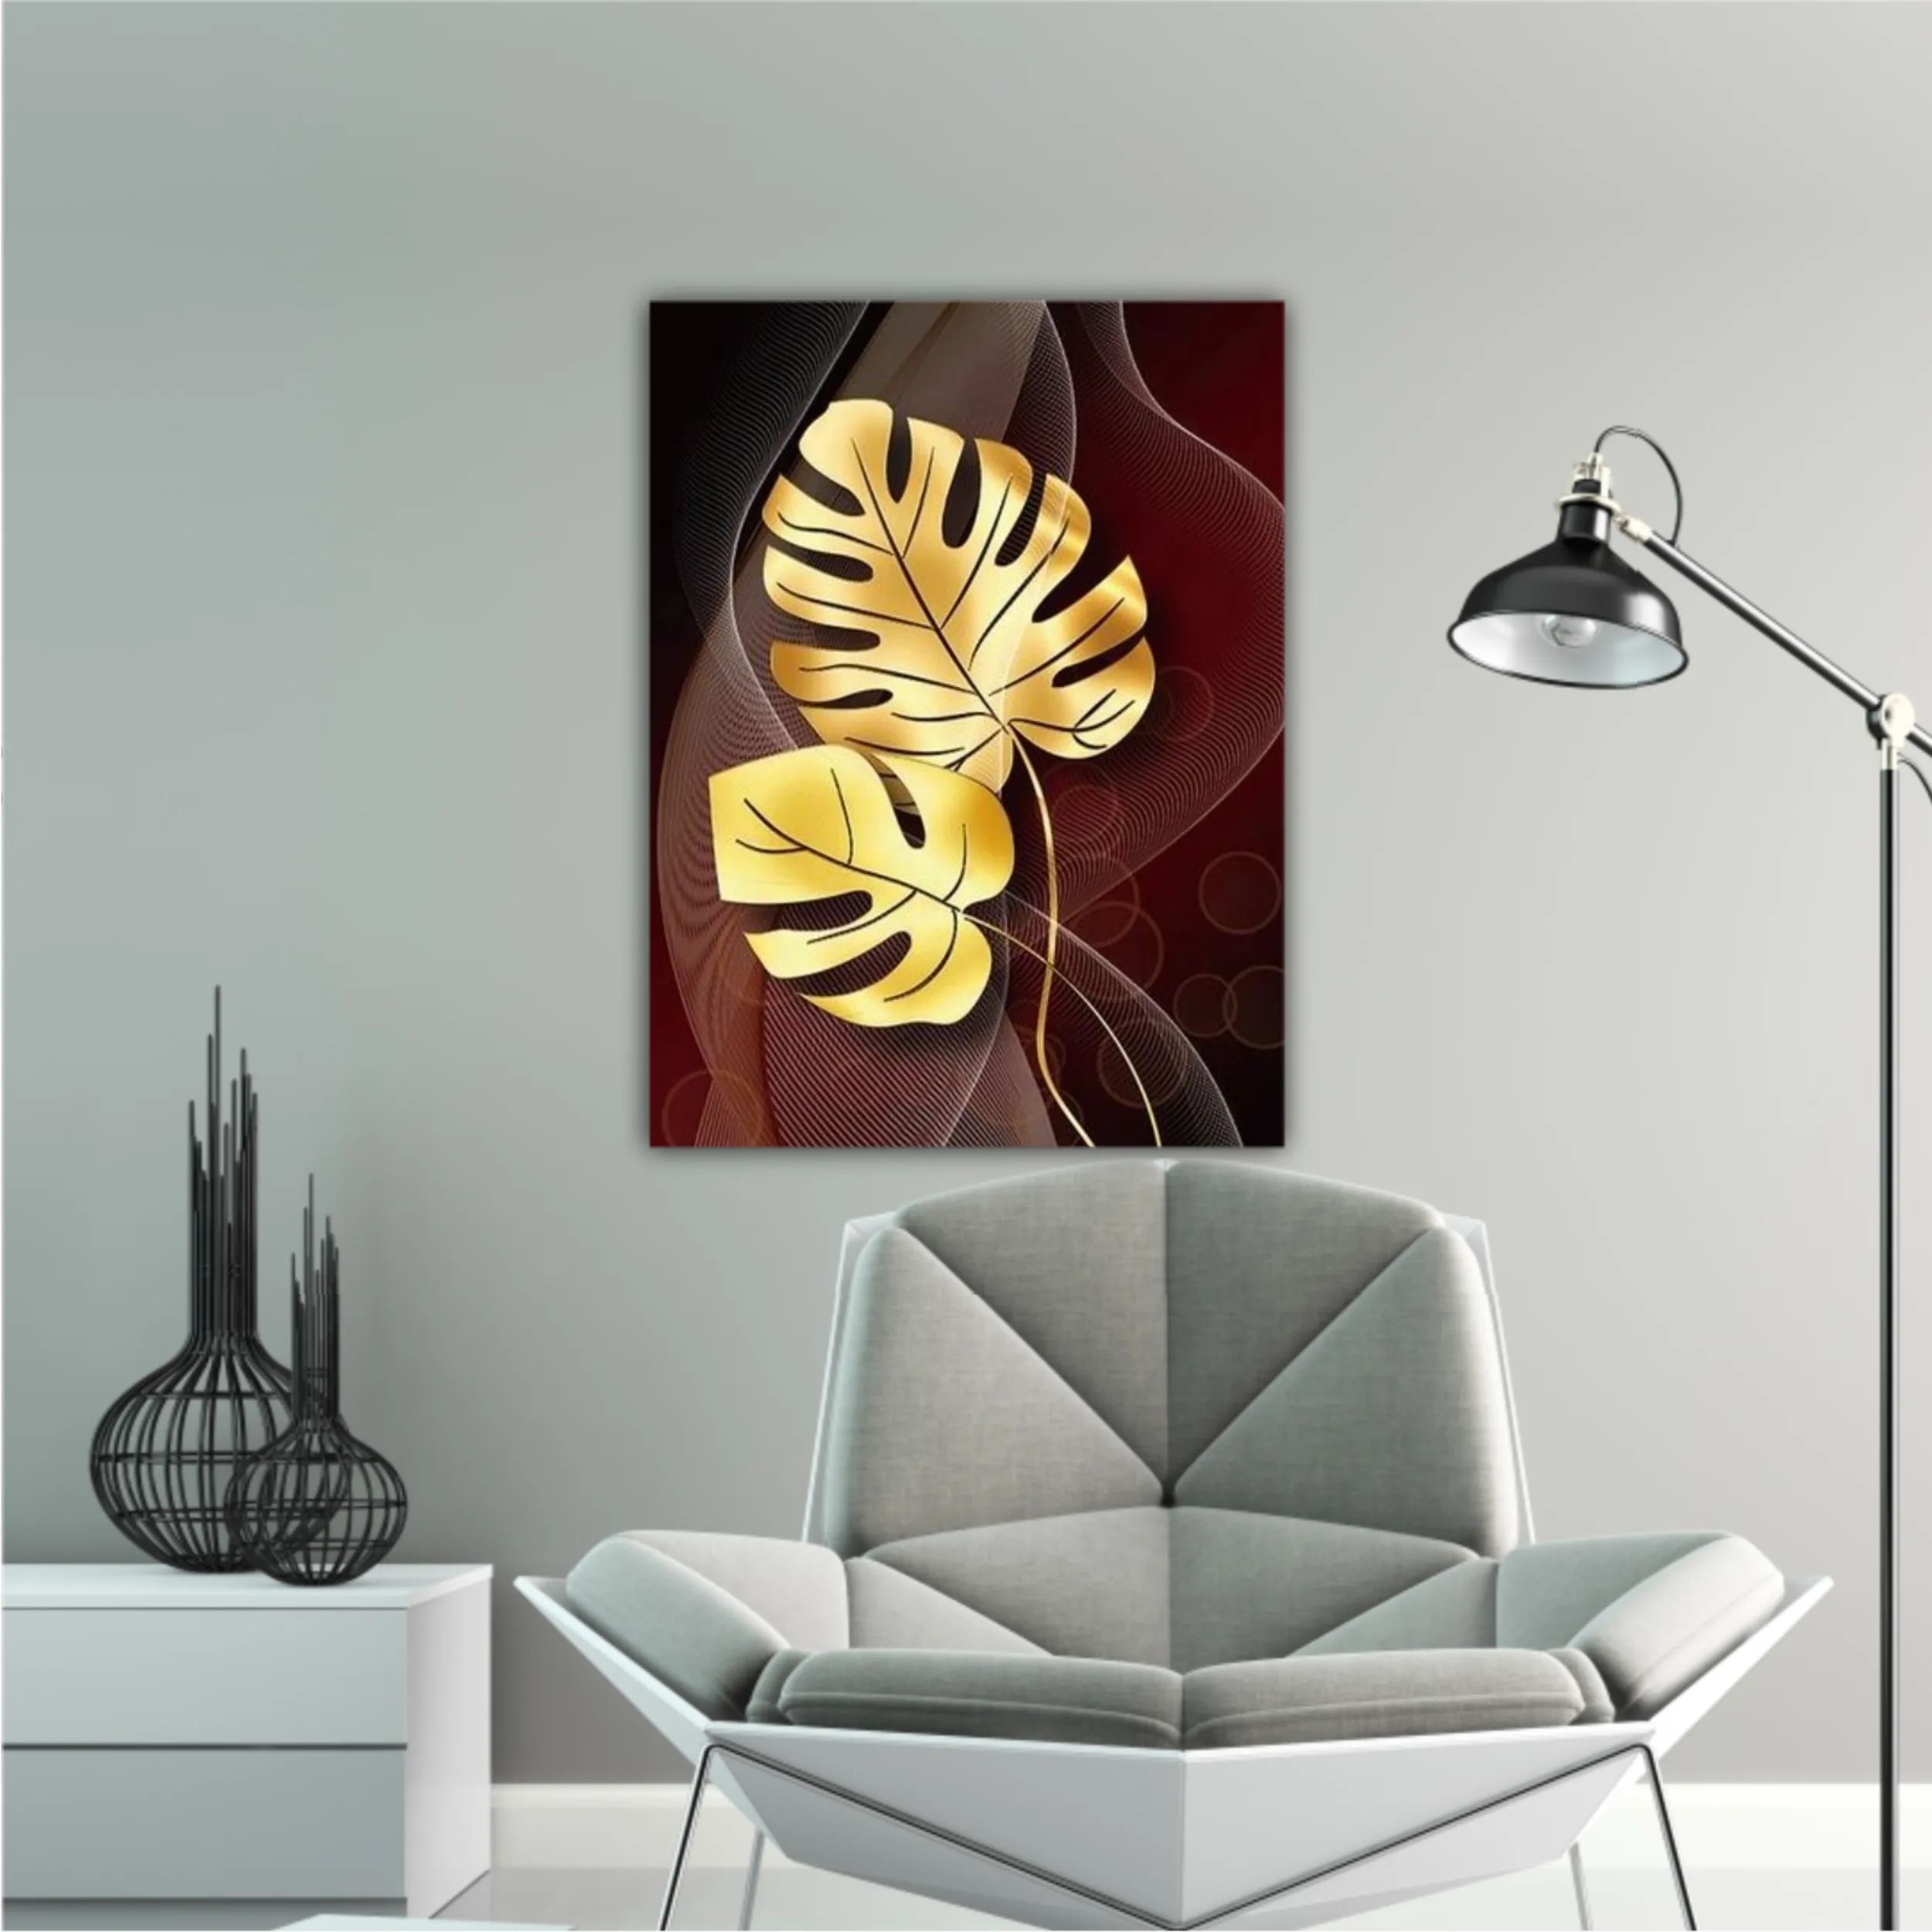 3d illustration of luxurious golden leaf